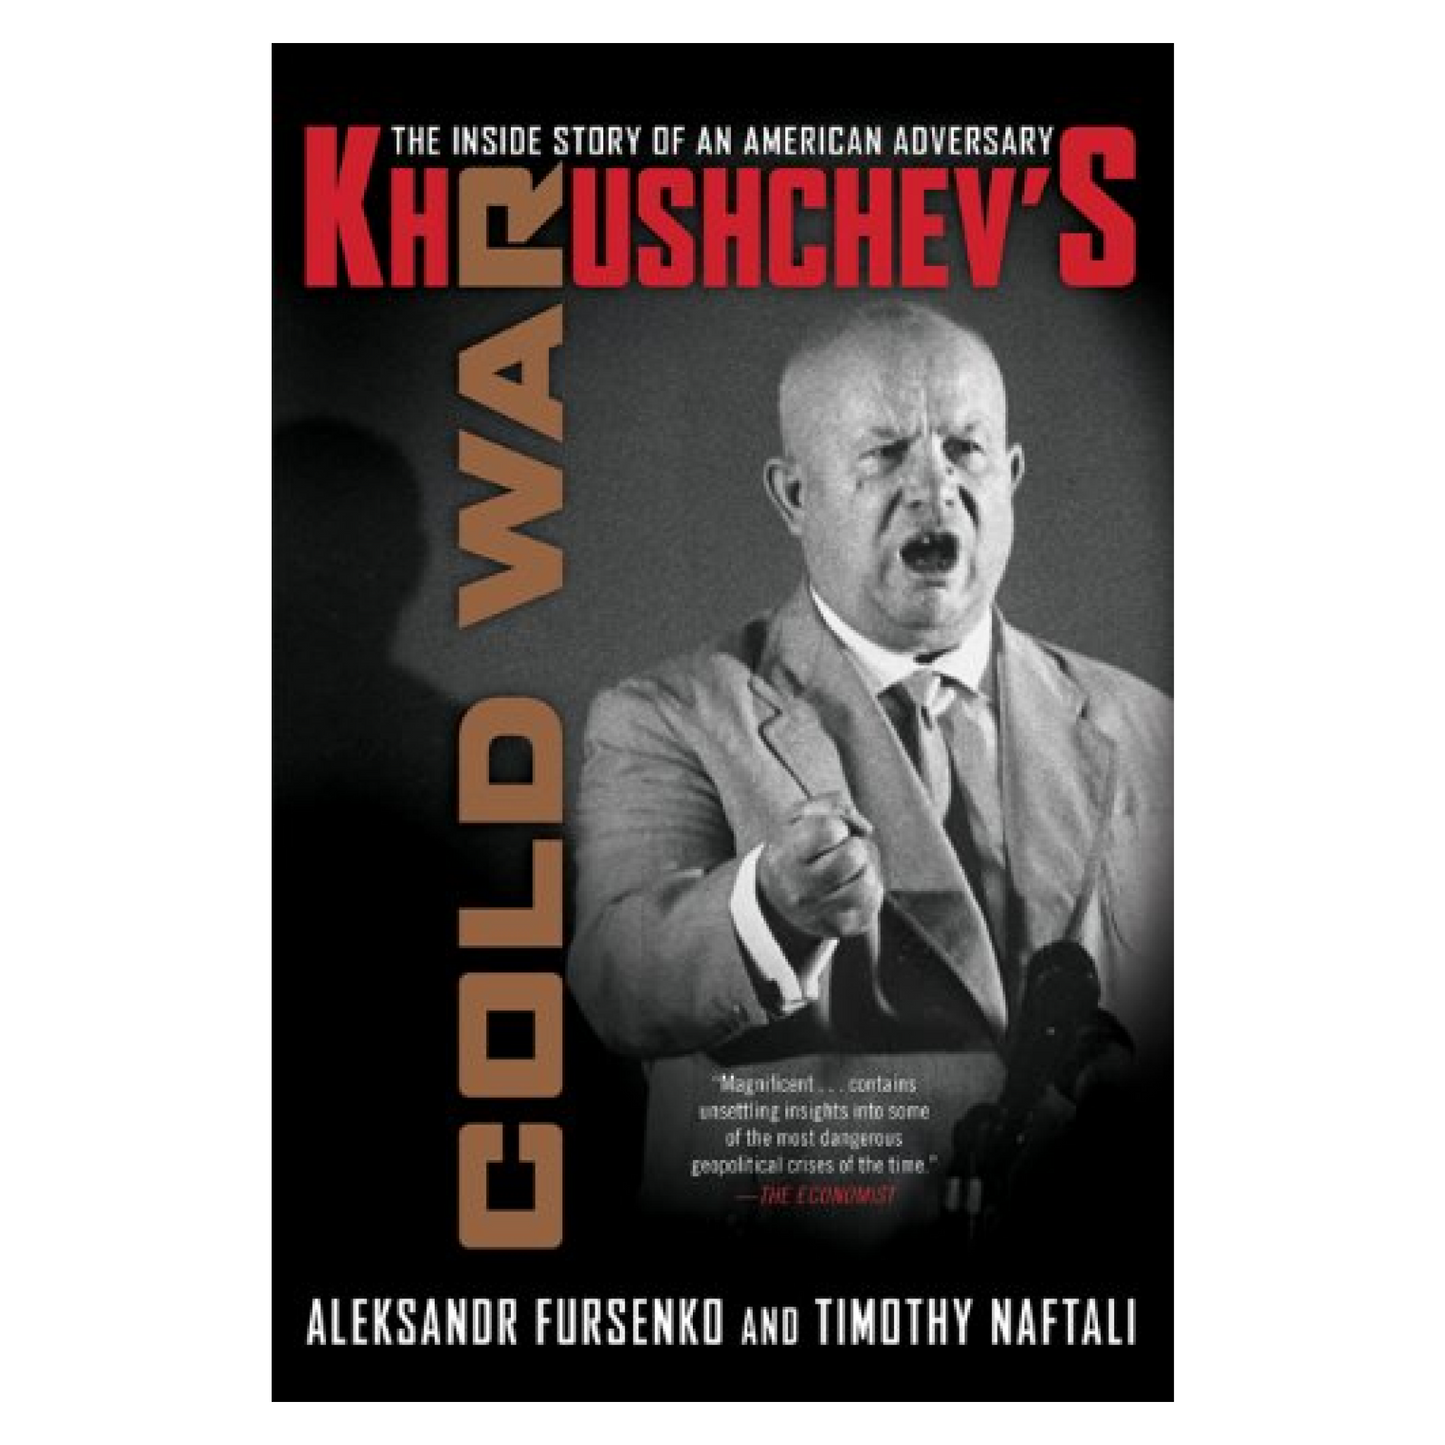 Khrushchev's Cold War